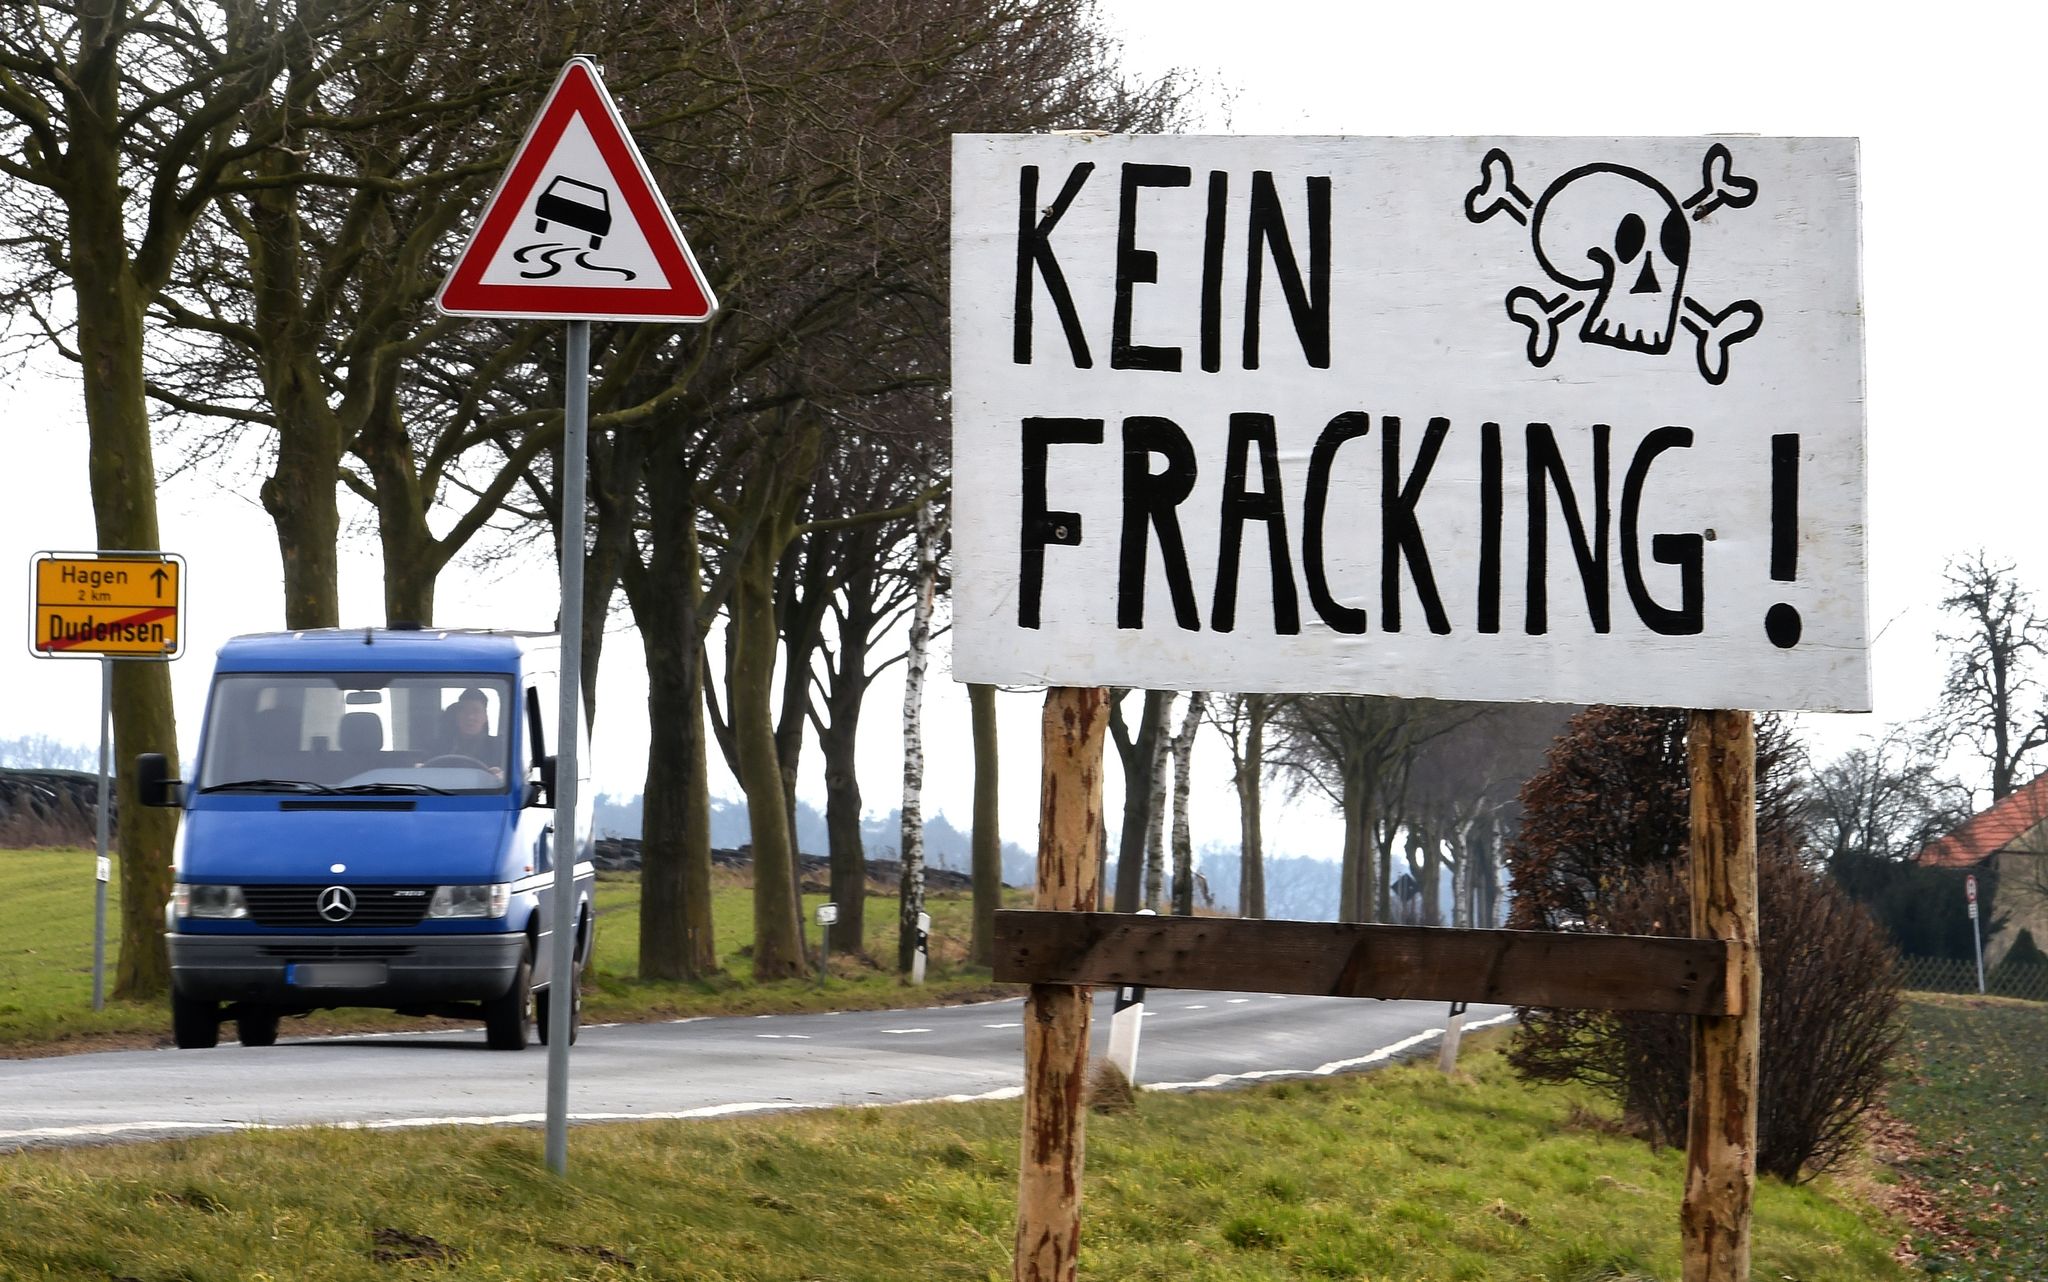 Aufgrund der potentiellen Umweltschäden ist Fracking für Grüne und SPD keine Option.